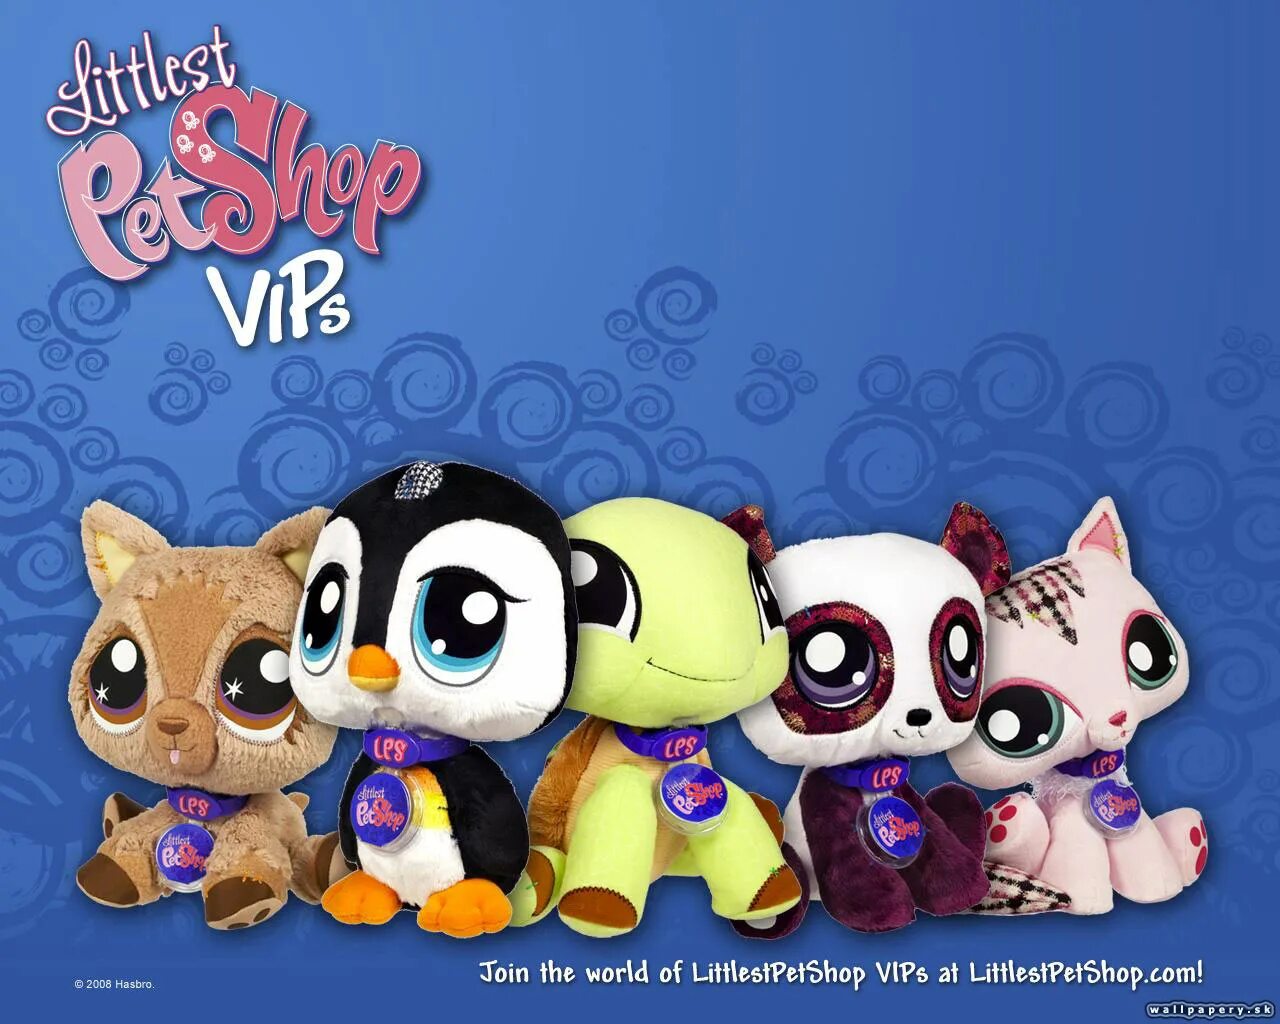 Pet shop remix. Little is Pet shop игра. My Littlest Pet shop игра. Littlest Pet shop 2010. Littlest Pet shop 2011.